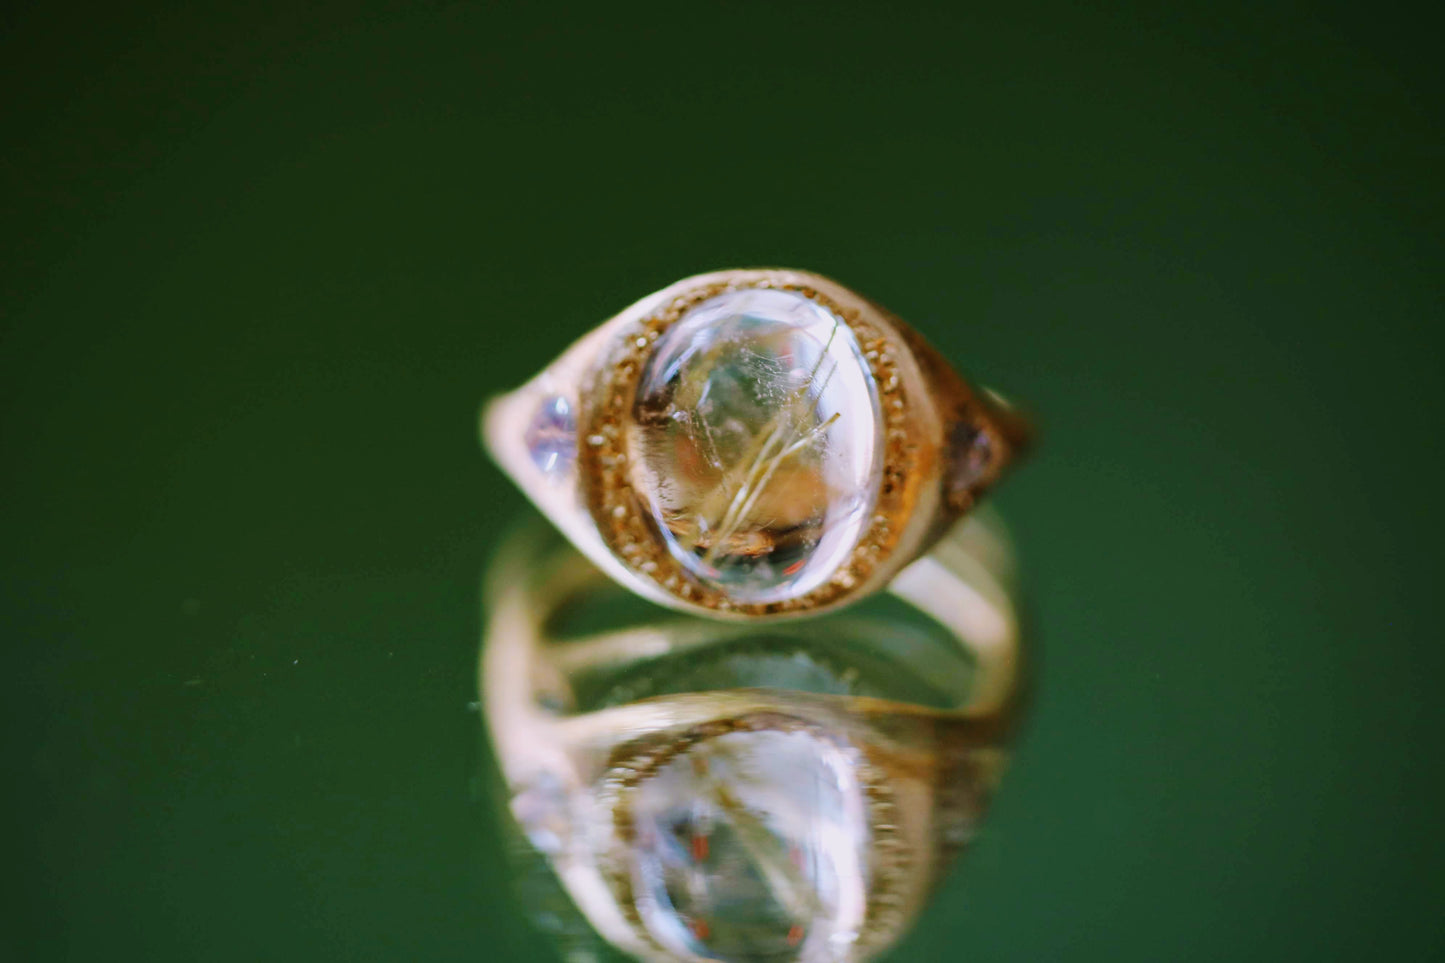 gold rutile quartz ring with blue moonstones